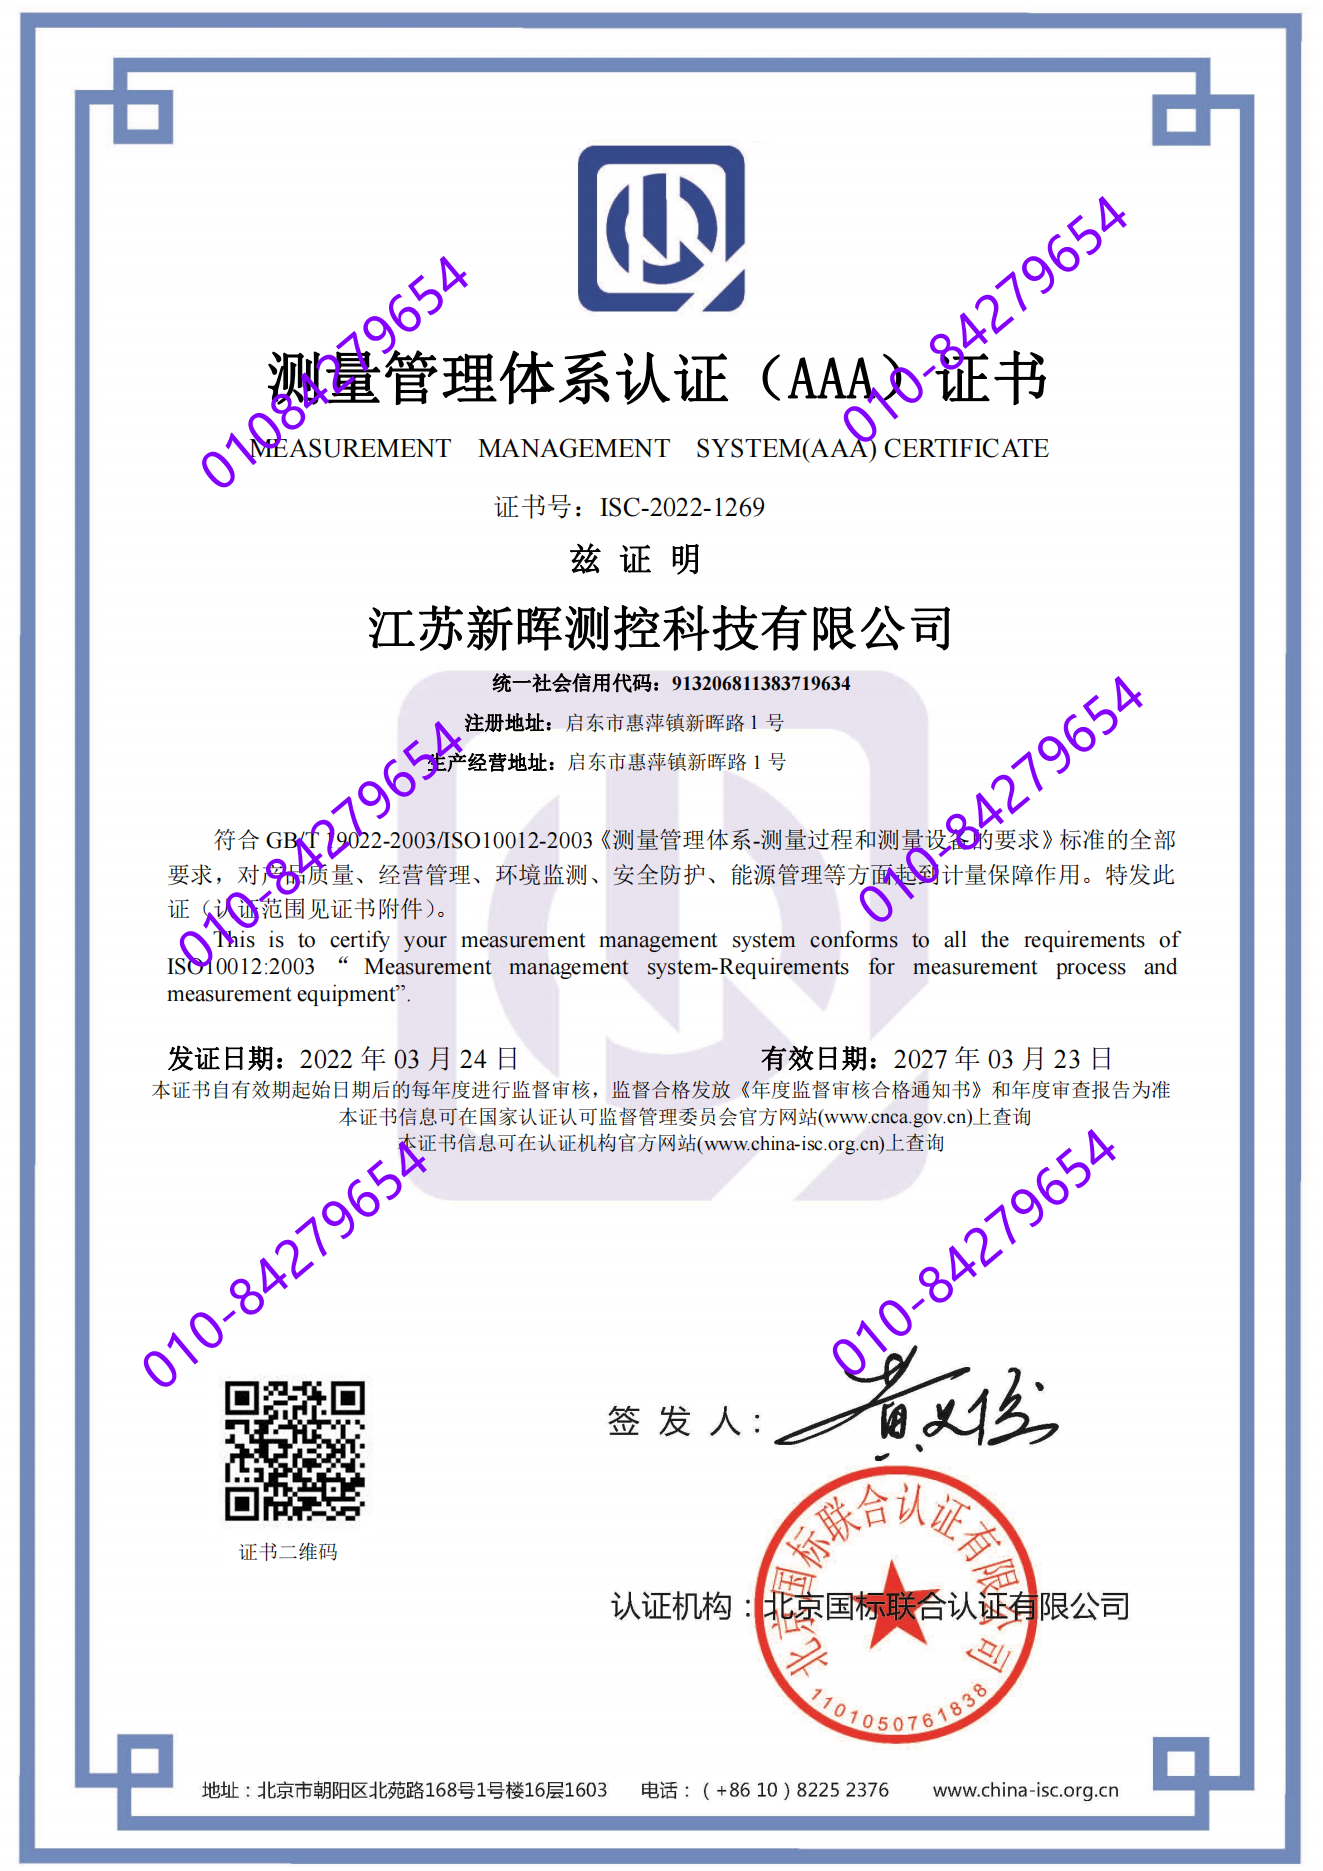 江苏新晖测控科技有限公司  喜获“测量管理体系认证（AAA）证书”